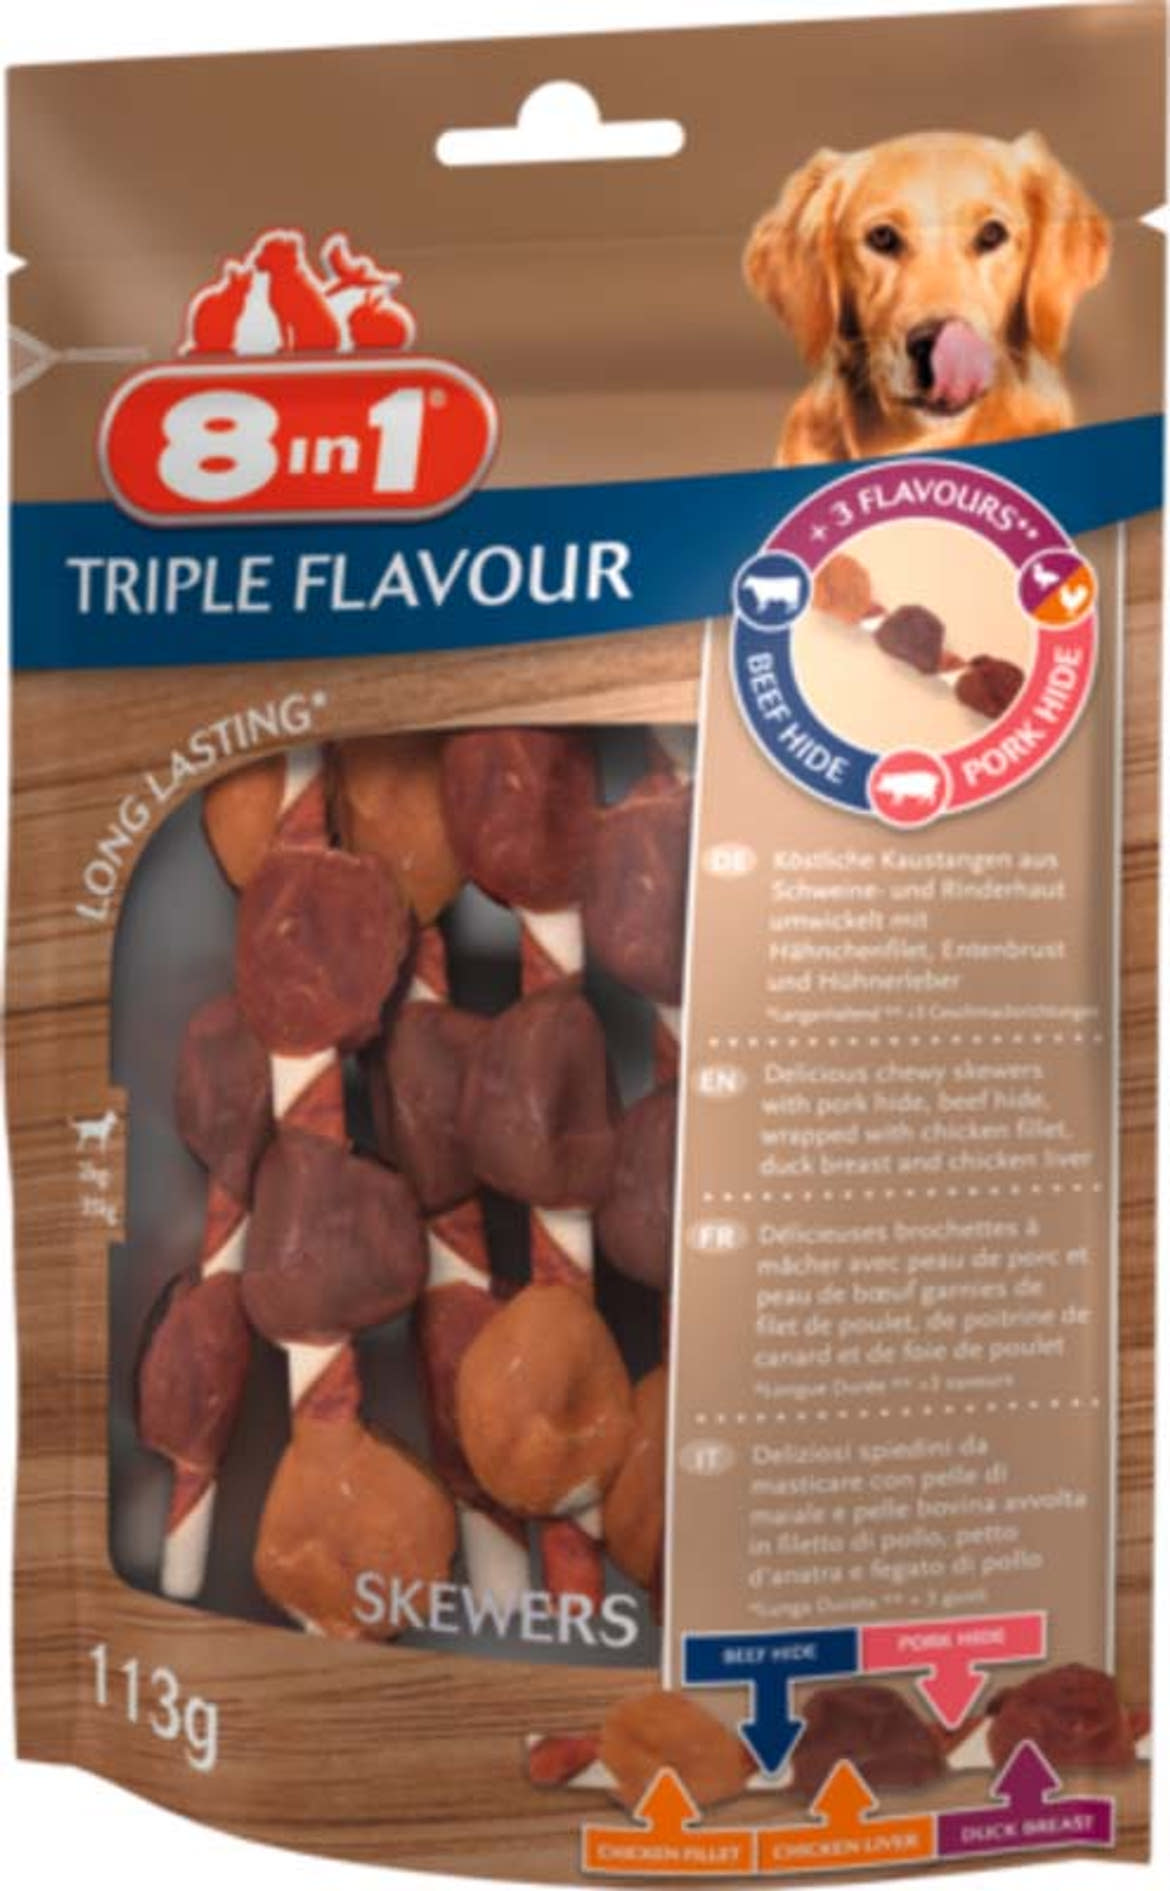 8in1 Triple Flavour Skewers kutya rágórúd